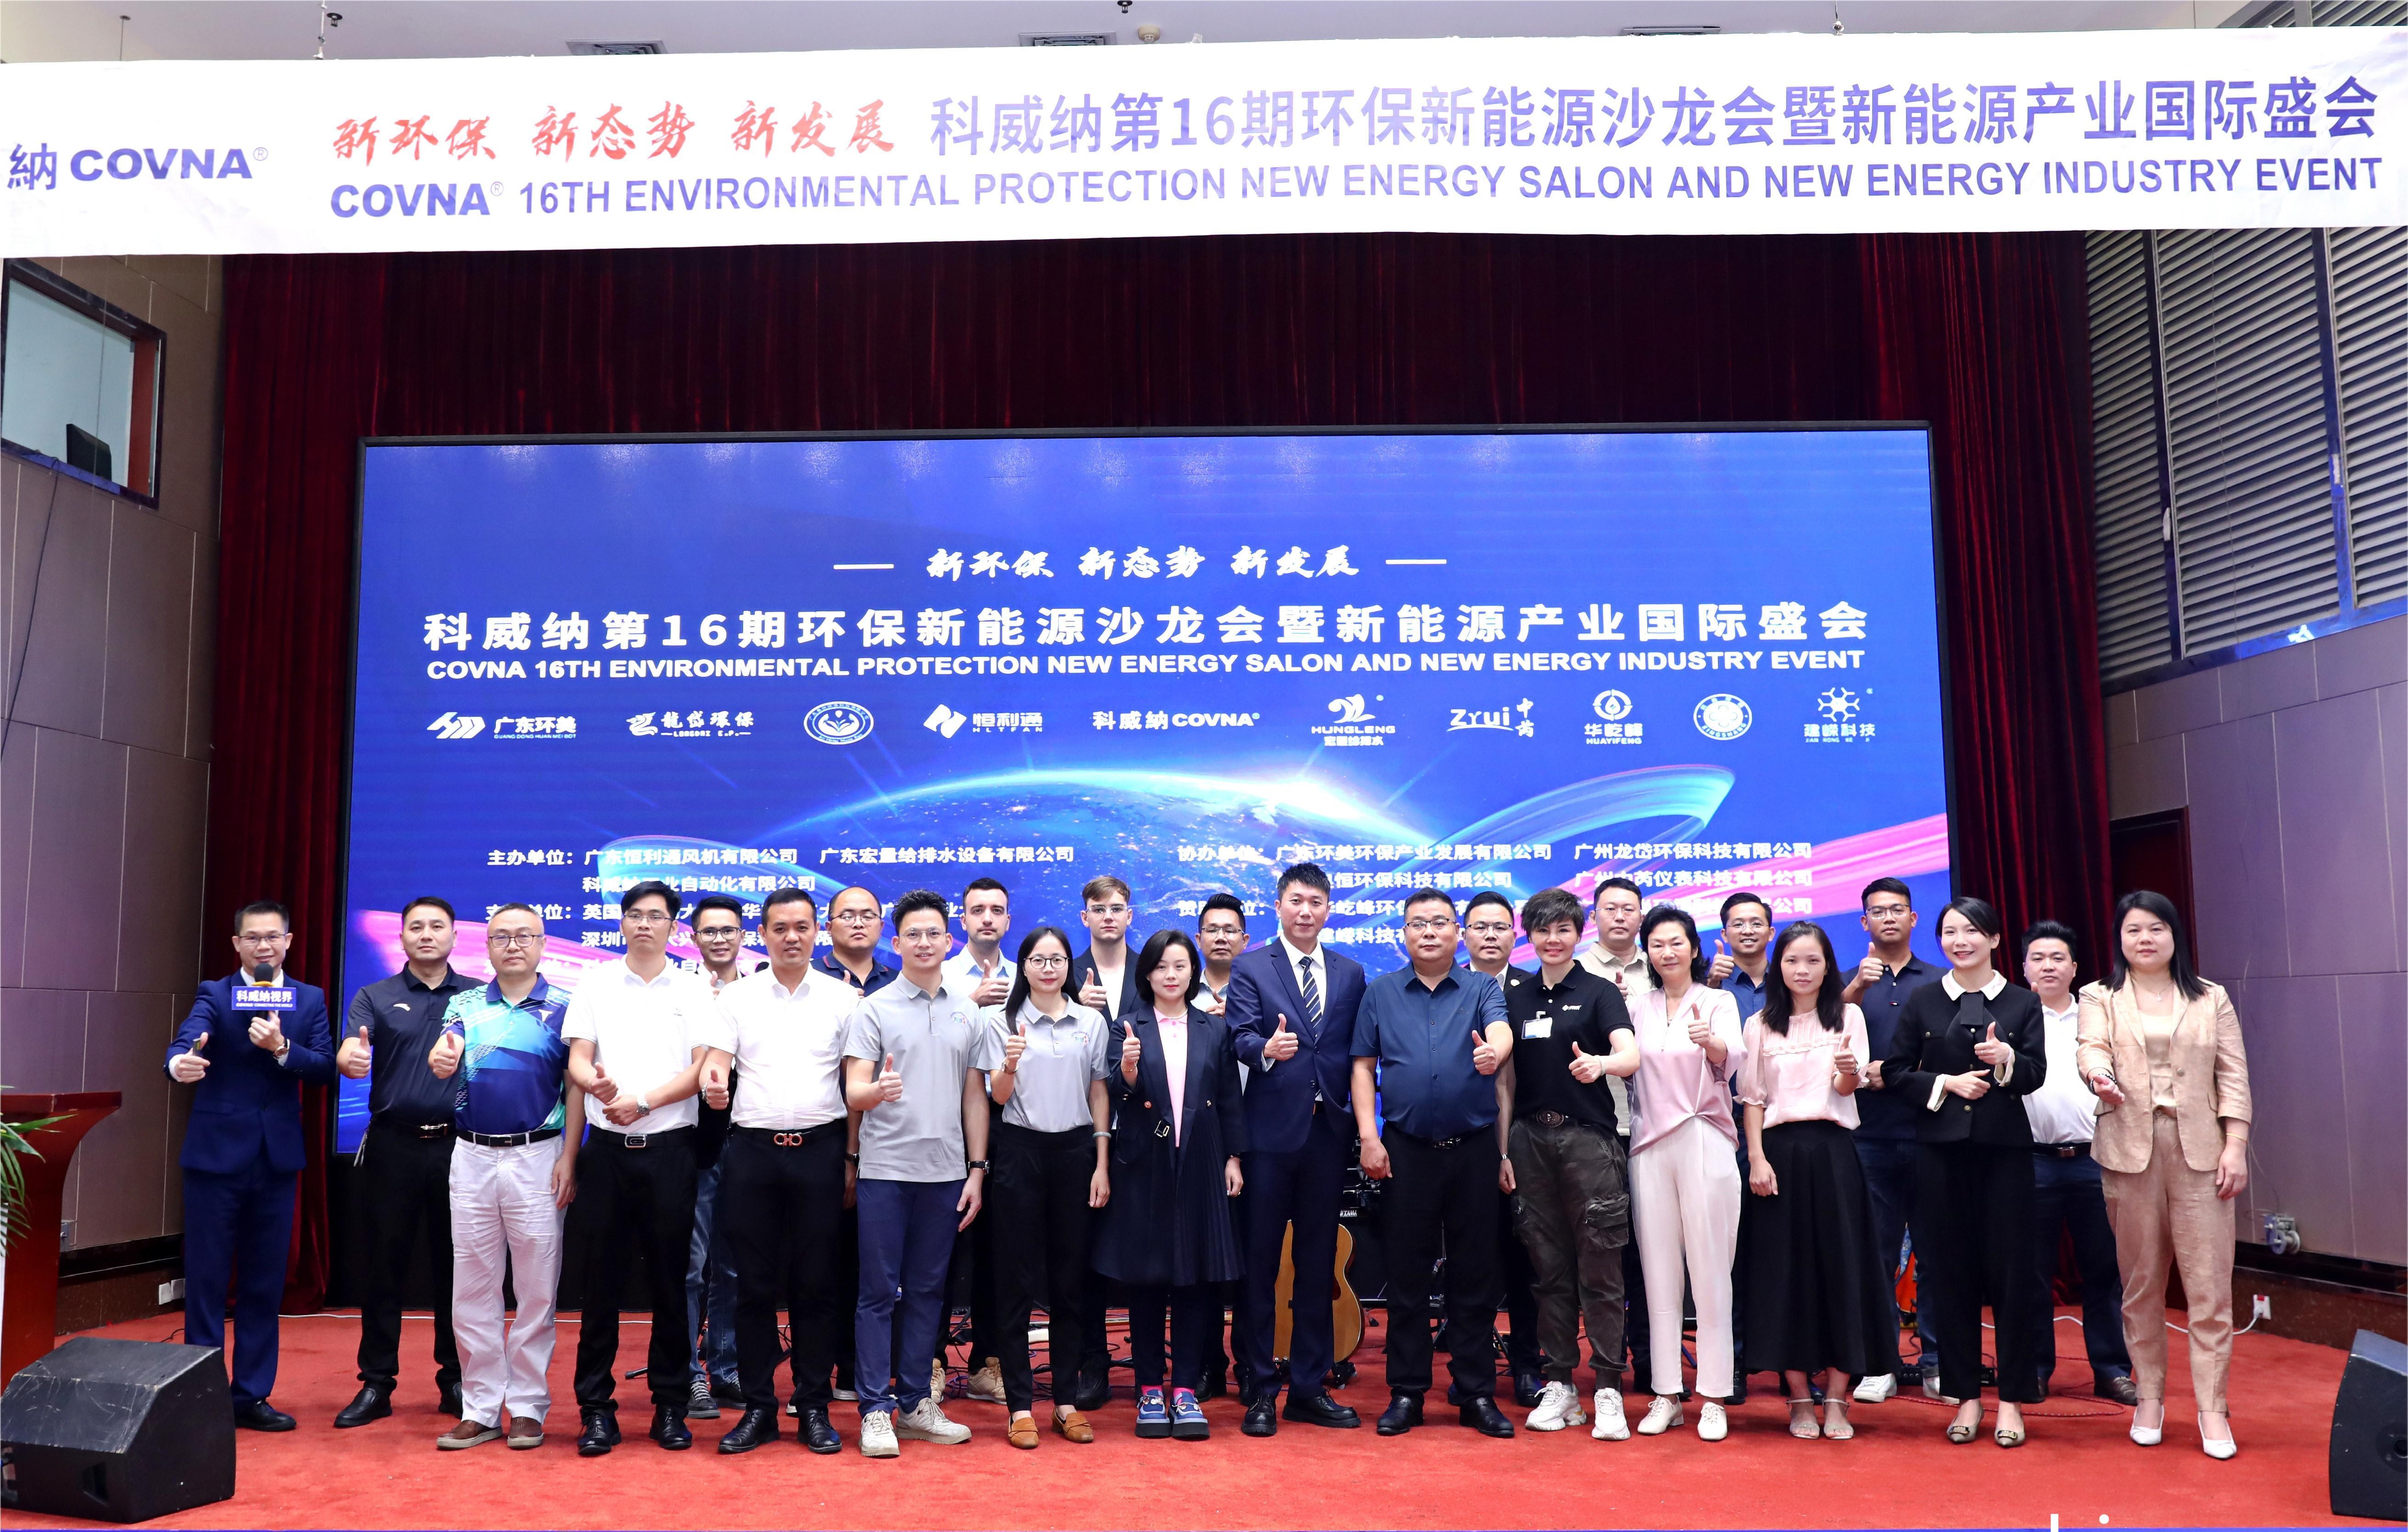 COVNA STARK hat erfolgreich die Industriekonferenz für Umweltschutz und Energieeinsparung in Guangzhou durchgeführt